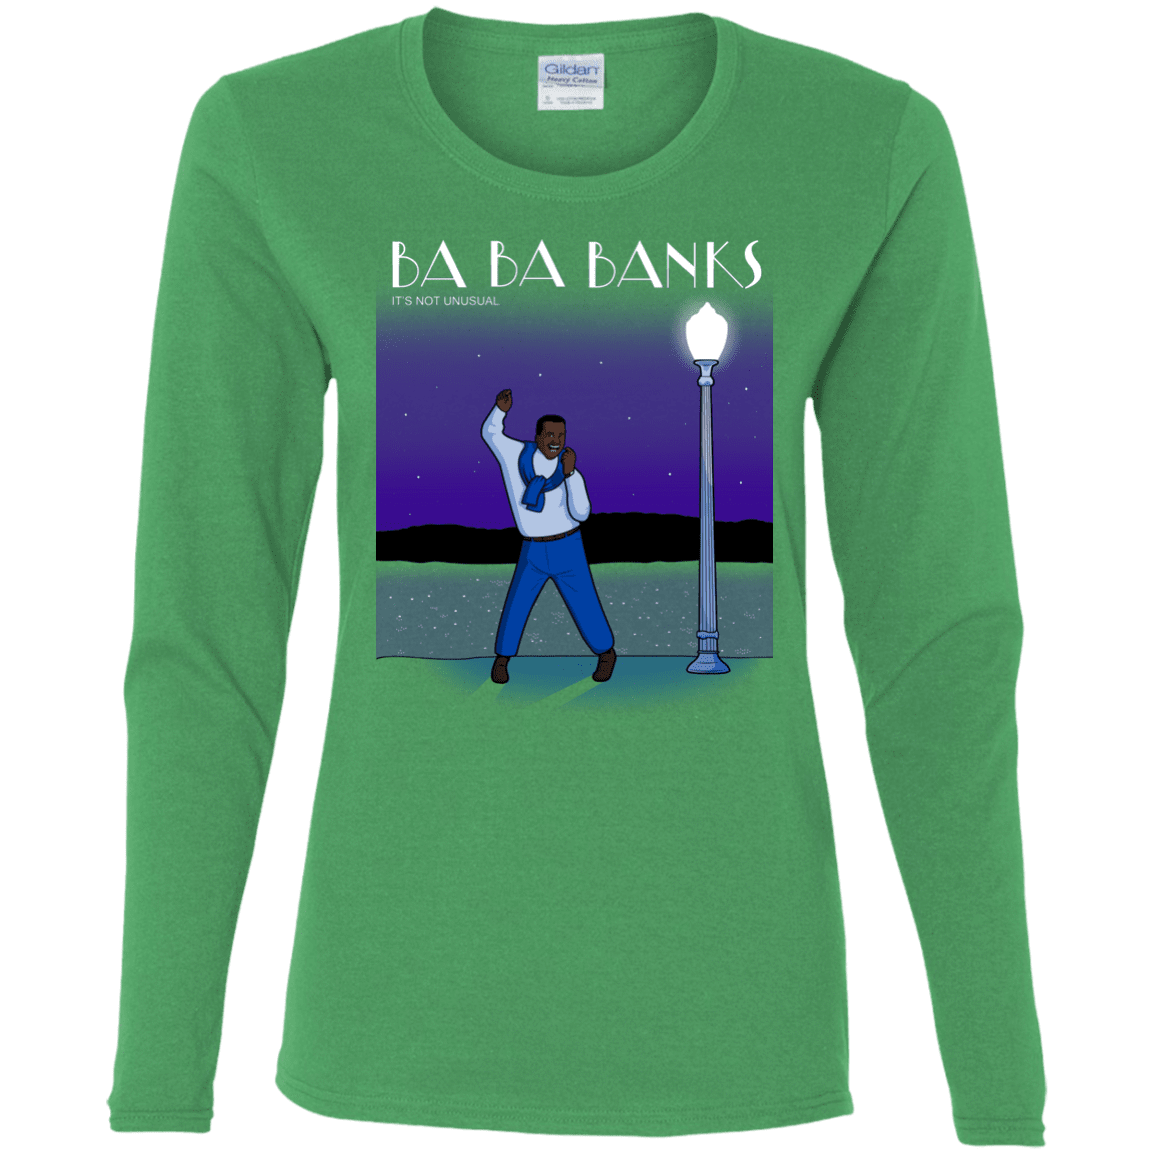 T-Shirts Irish Green / S Ba Ba Banks Women's Long Sleeve T-Shirt